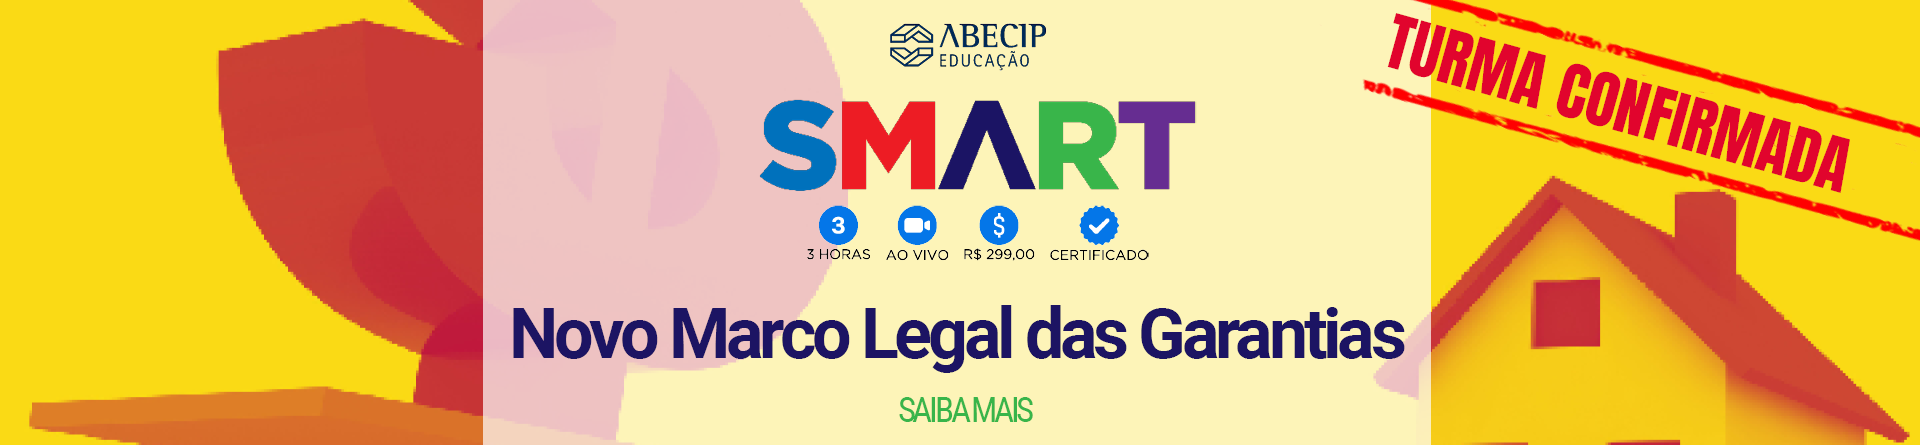 SMART - Novo Marco Legal das Garantias